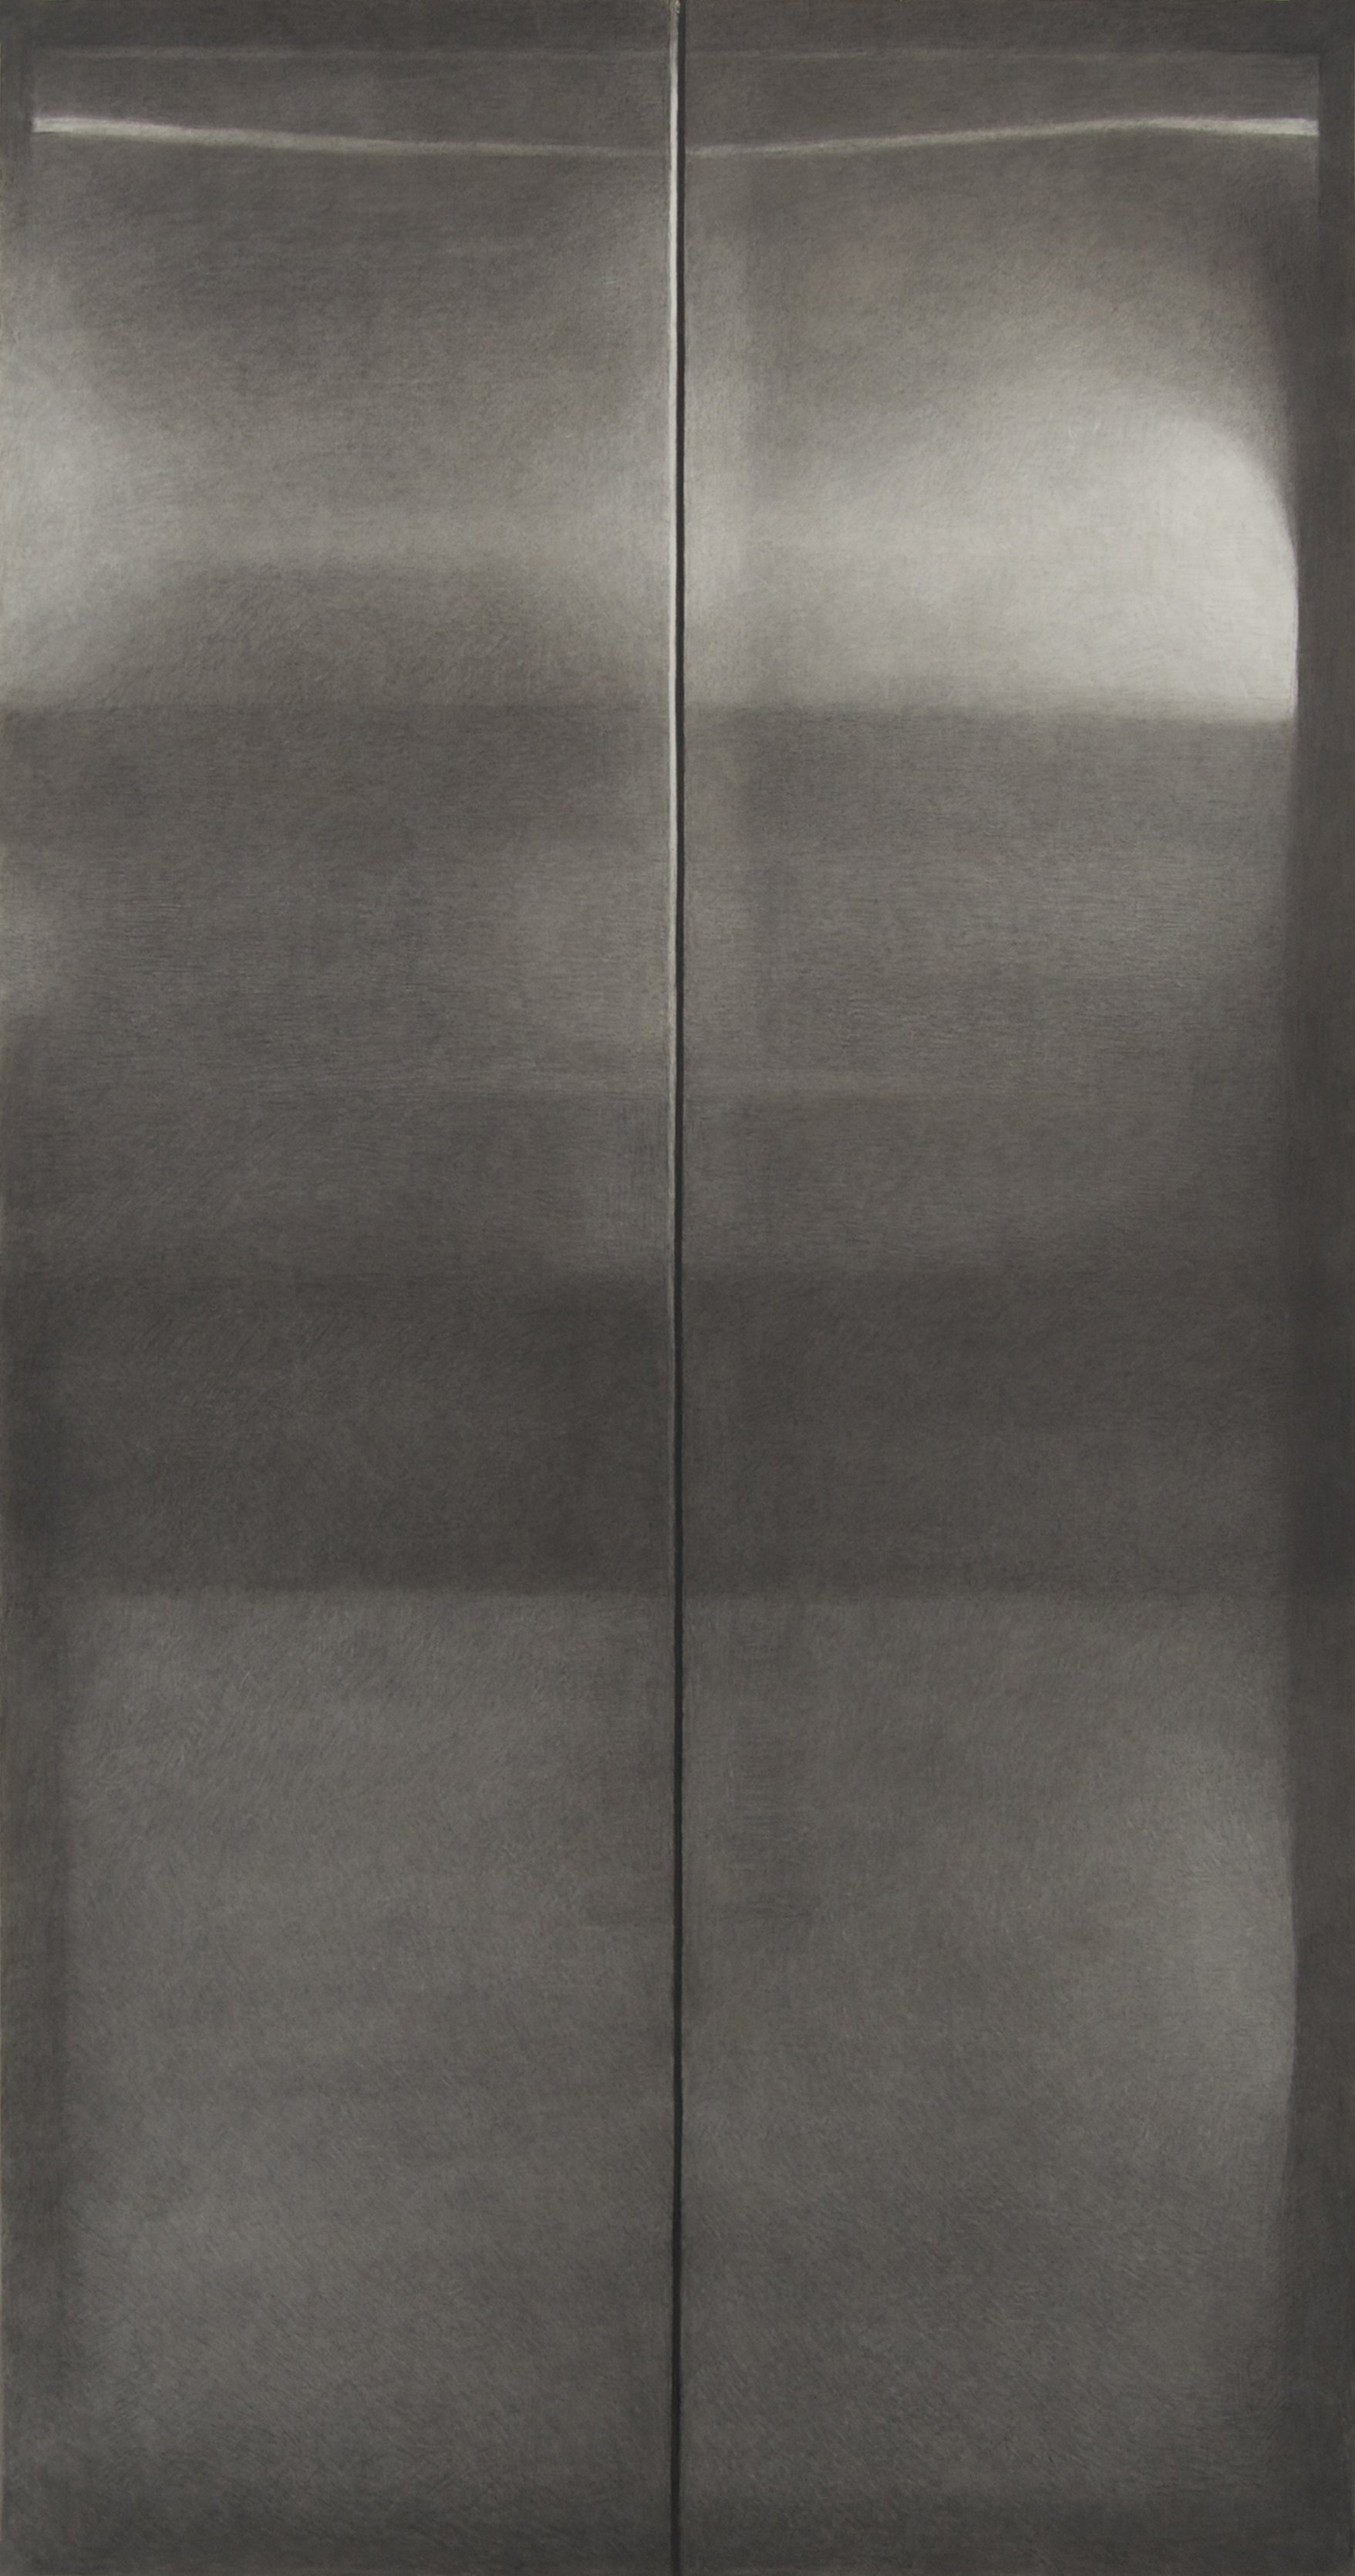  Elevator Door  charcoal on paper, 42x80", 2007   